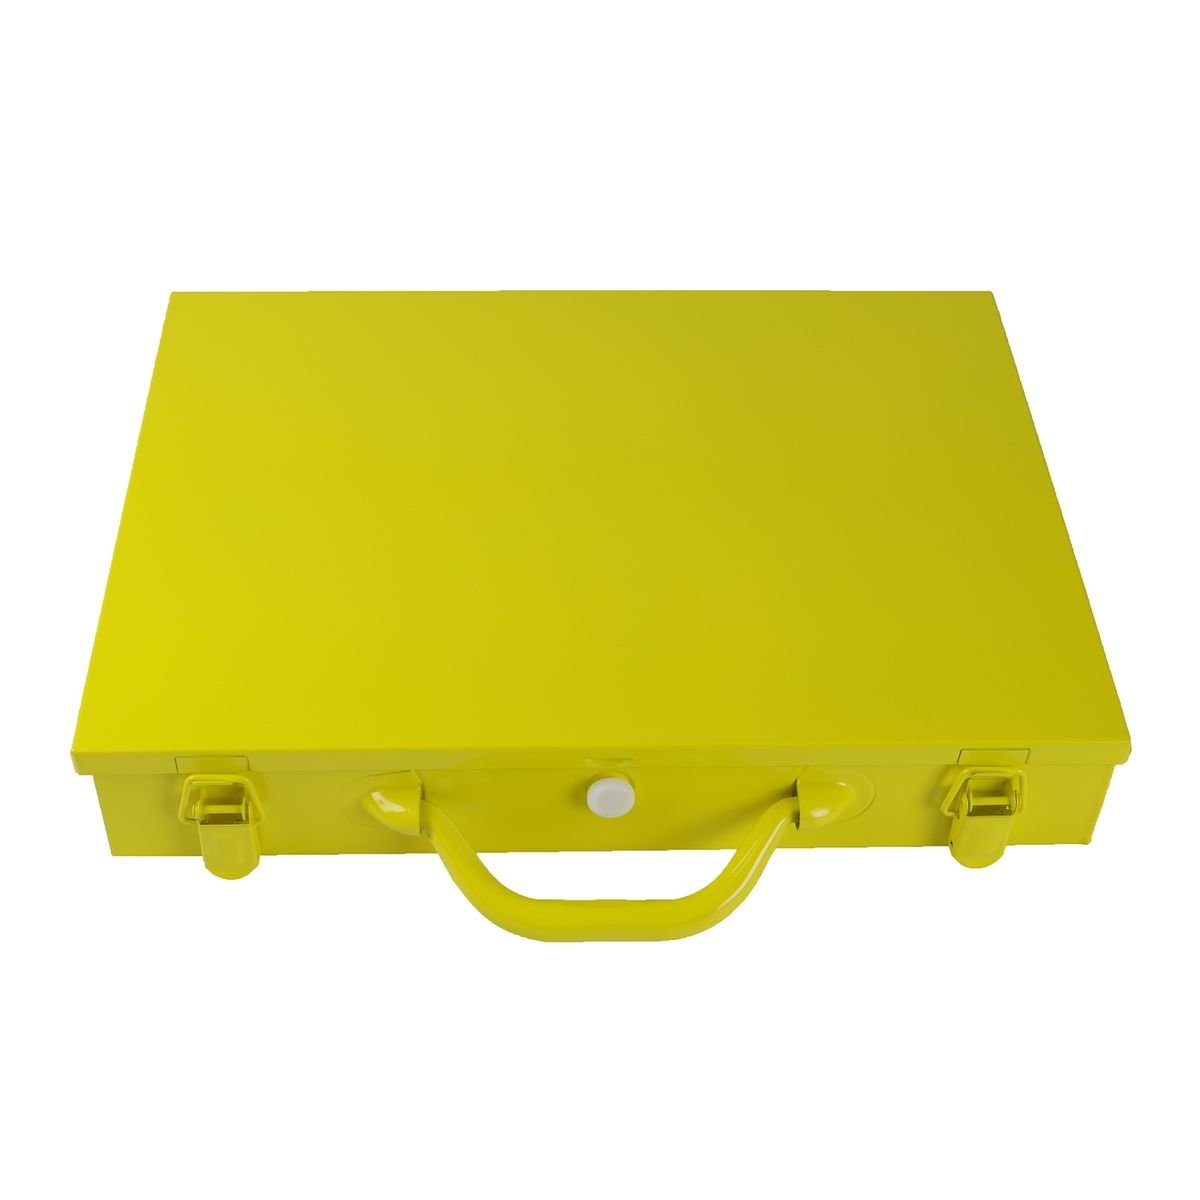 aus Sortimentskoffer Sortimentskasten Metall Starke gelber 14Fächer Werkzeugbox 28x39x7cm